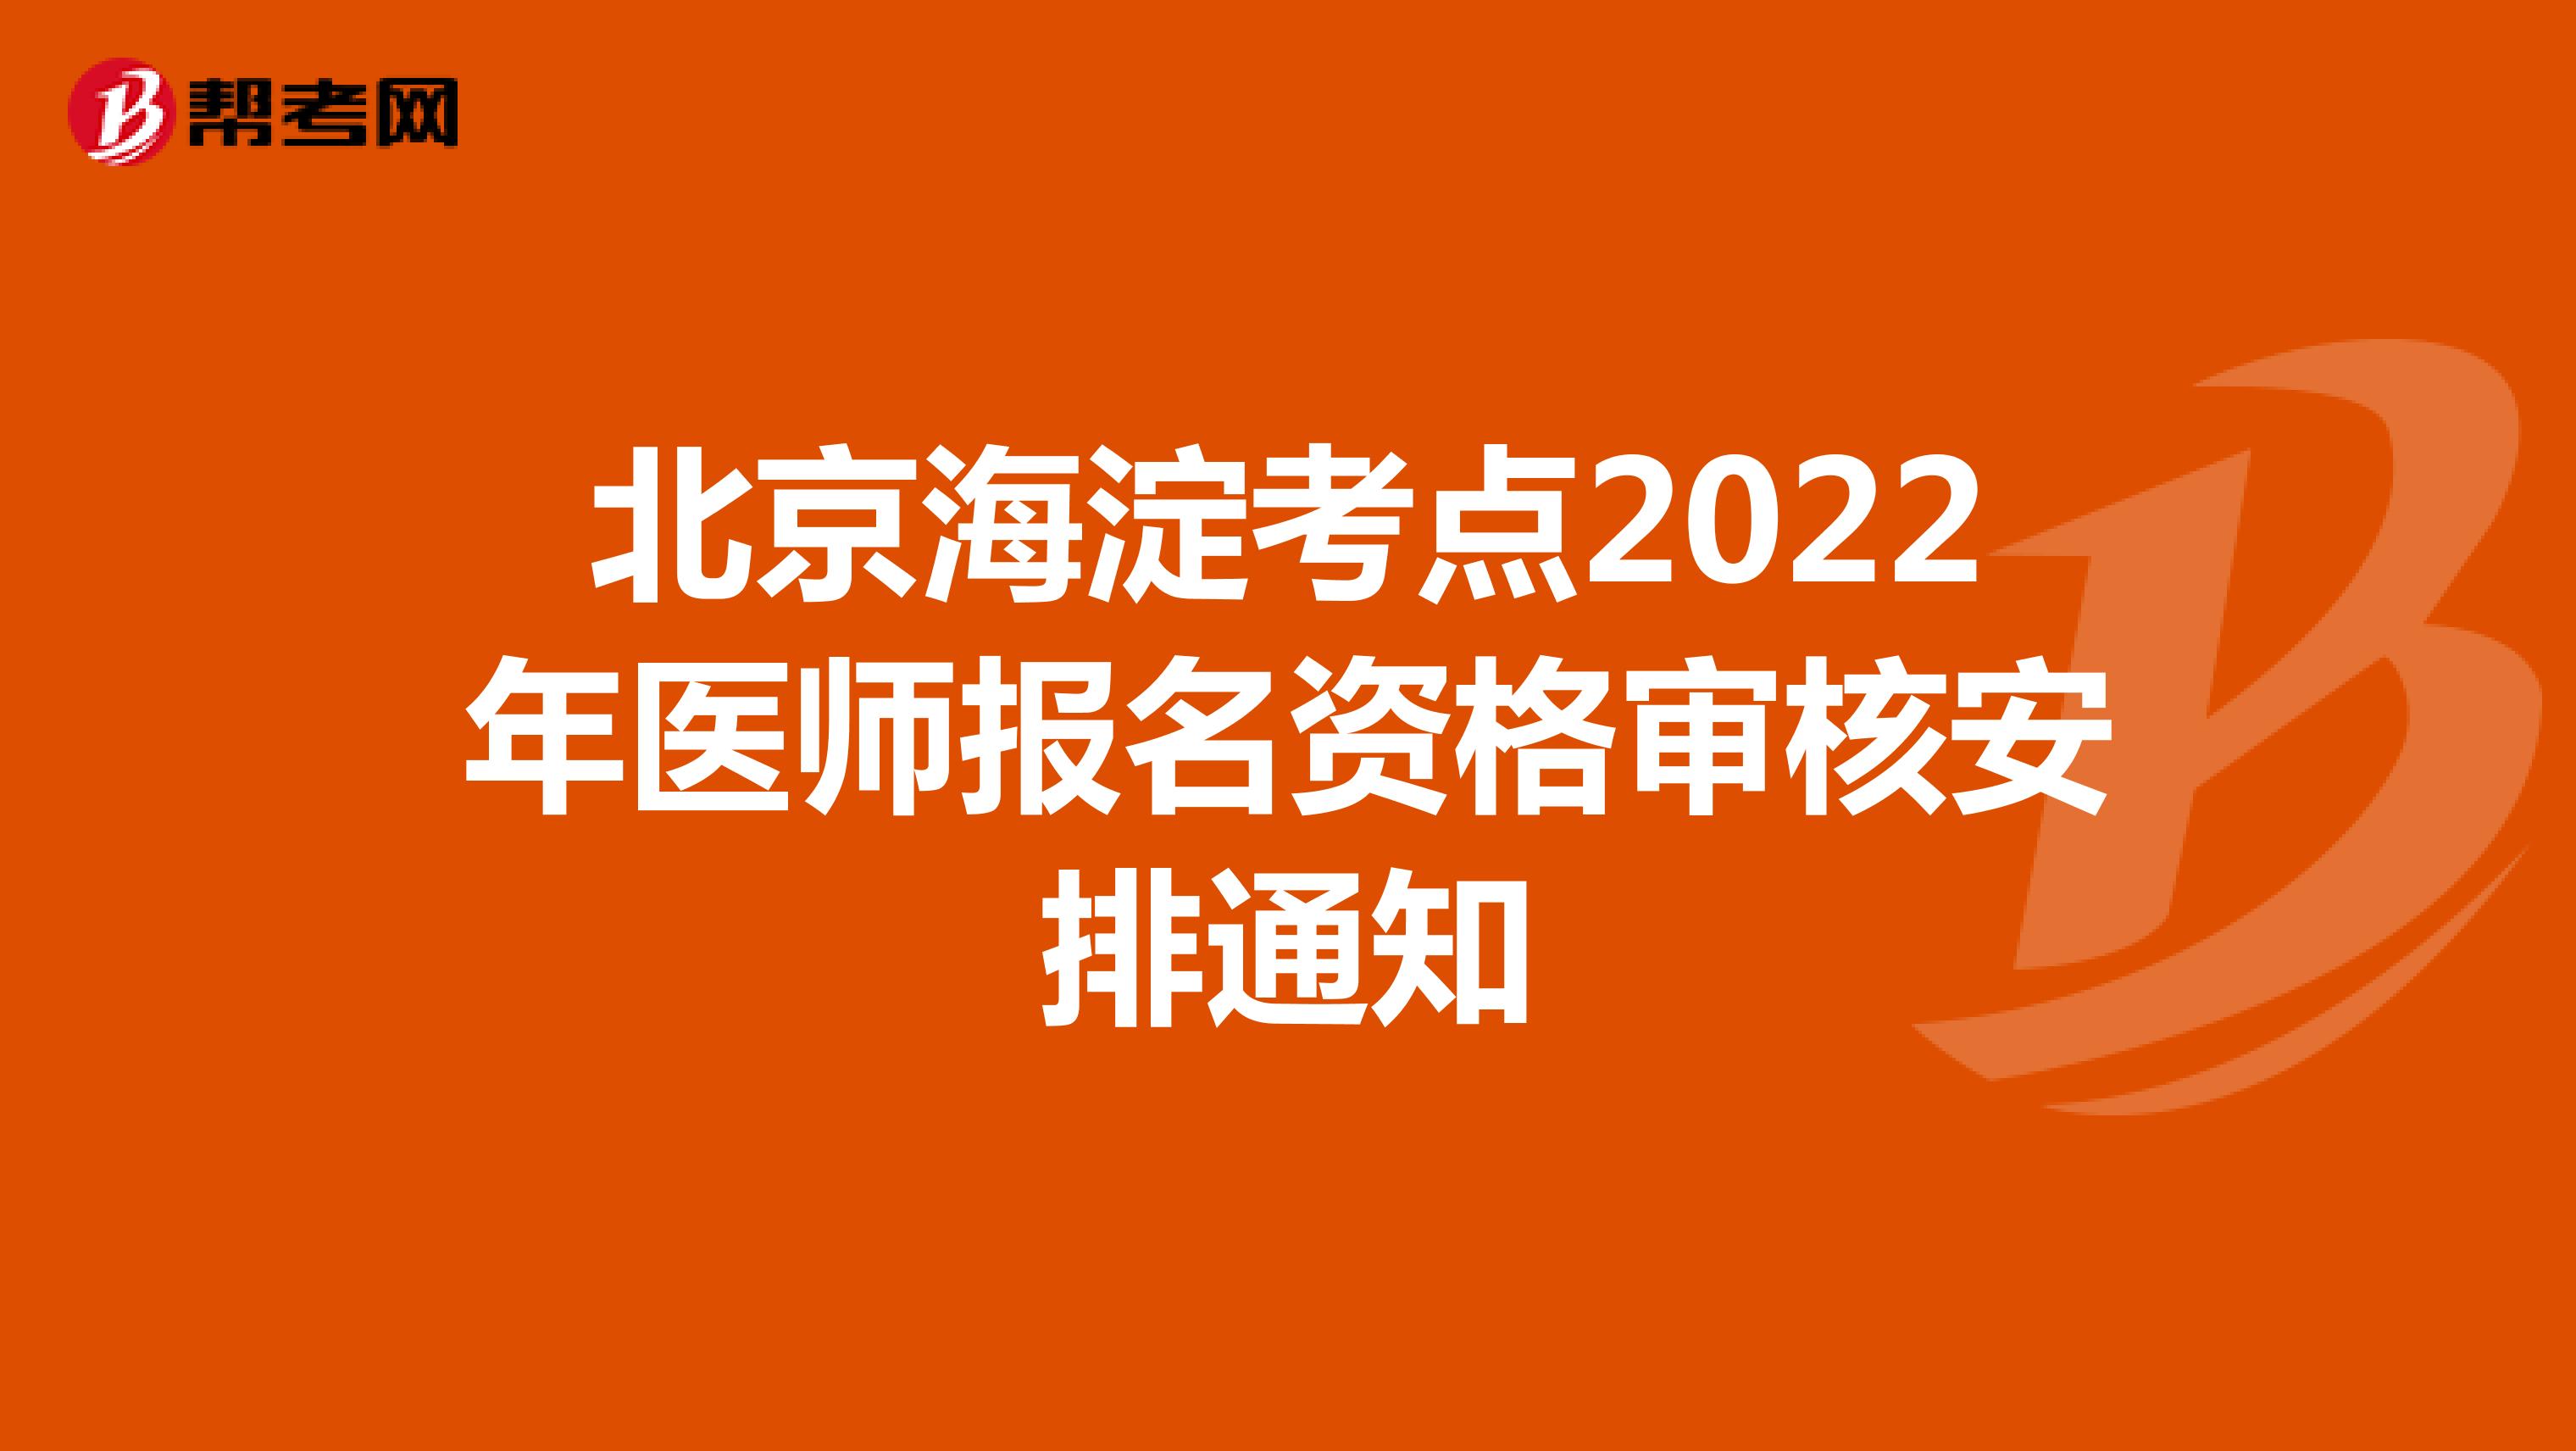 北京海淀考点2022年医师报名资格审核安排通知